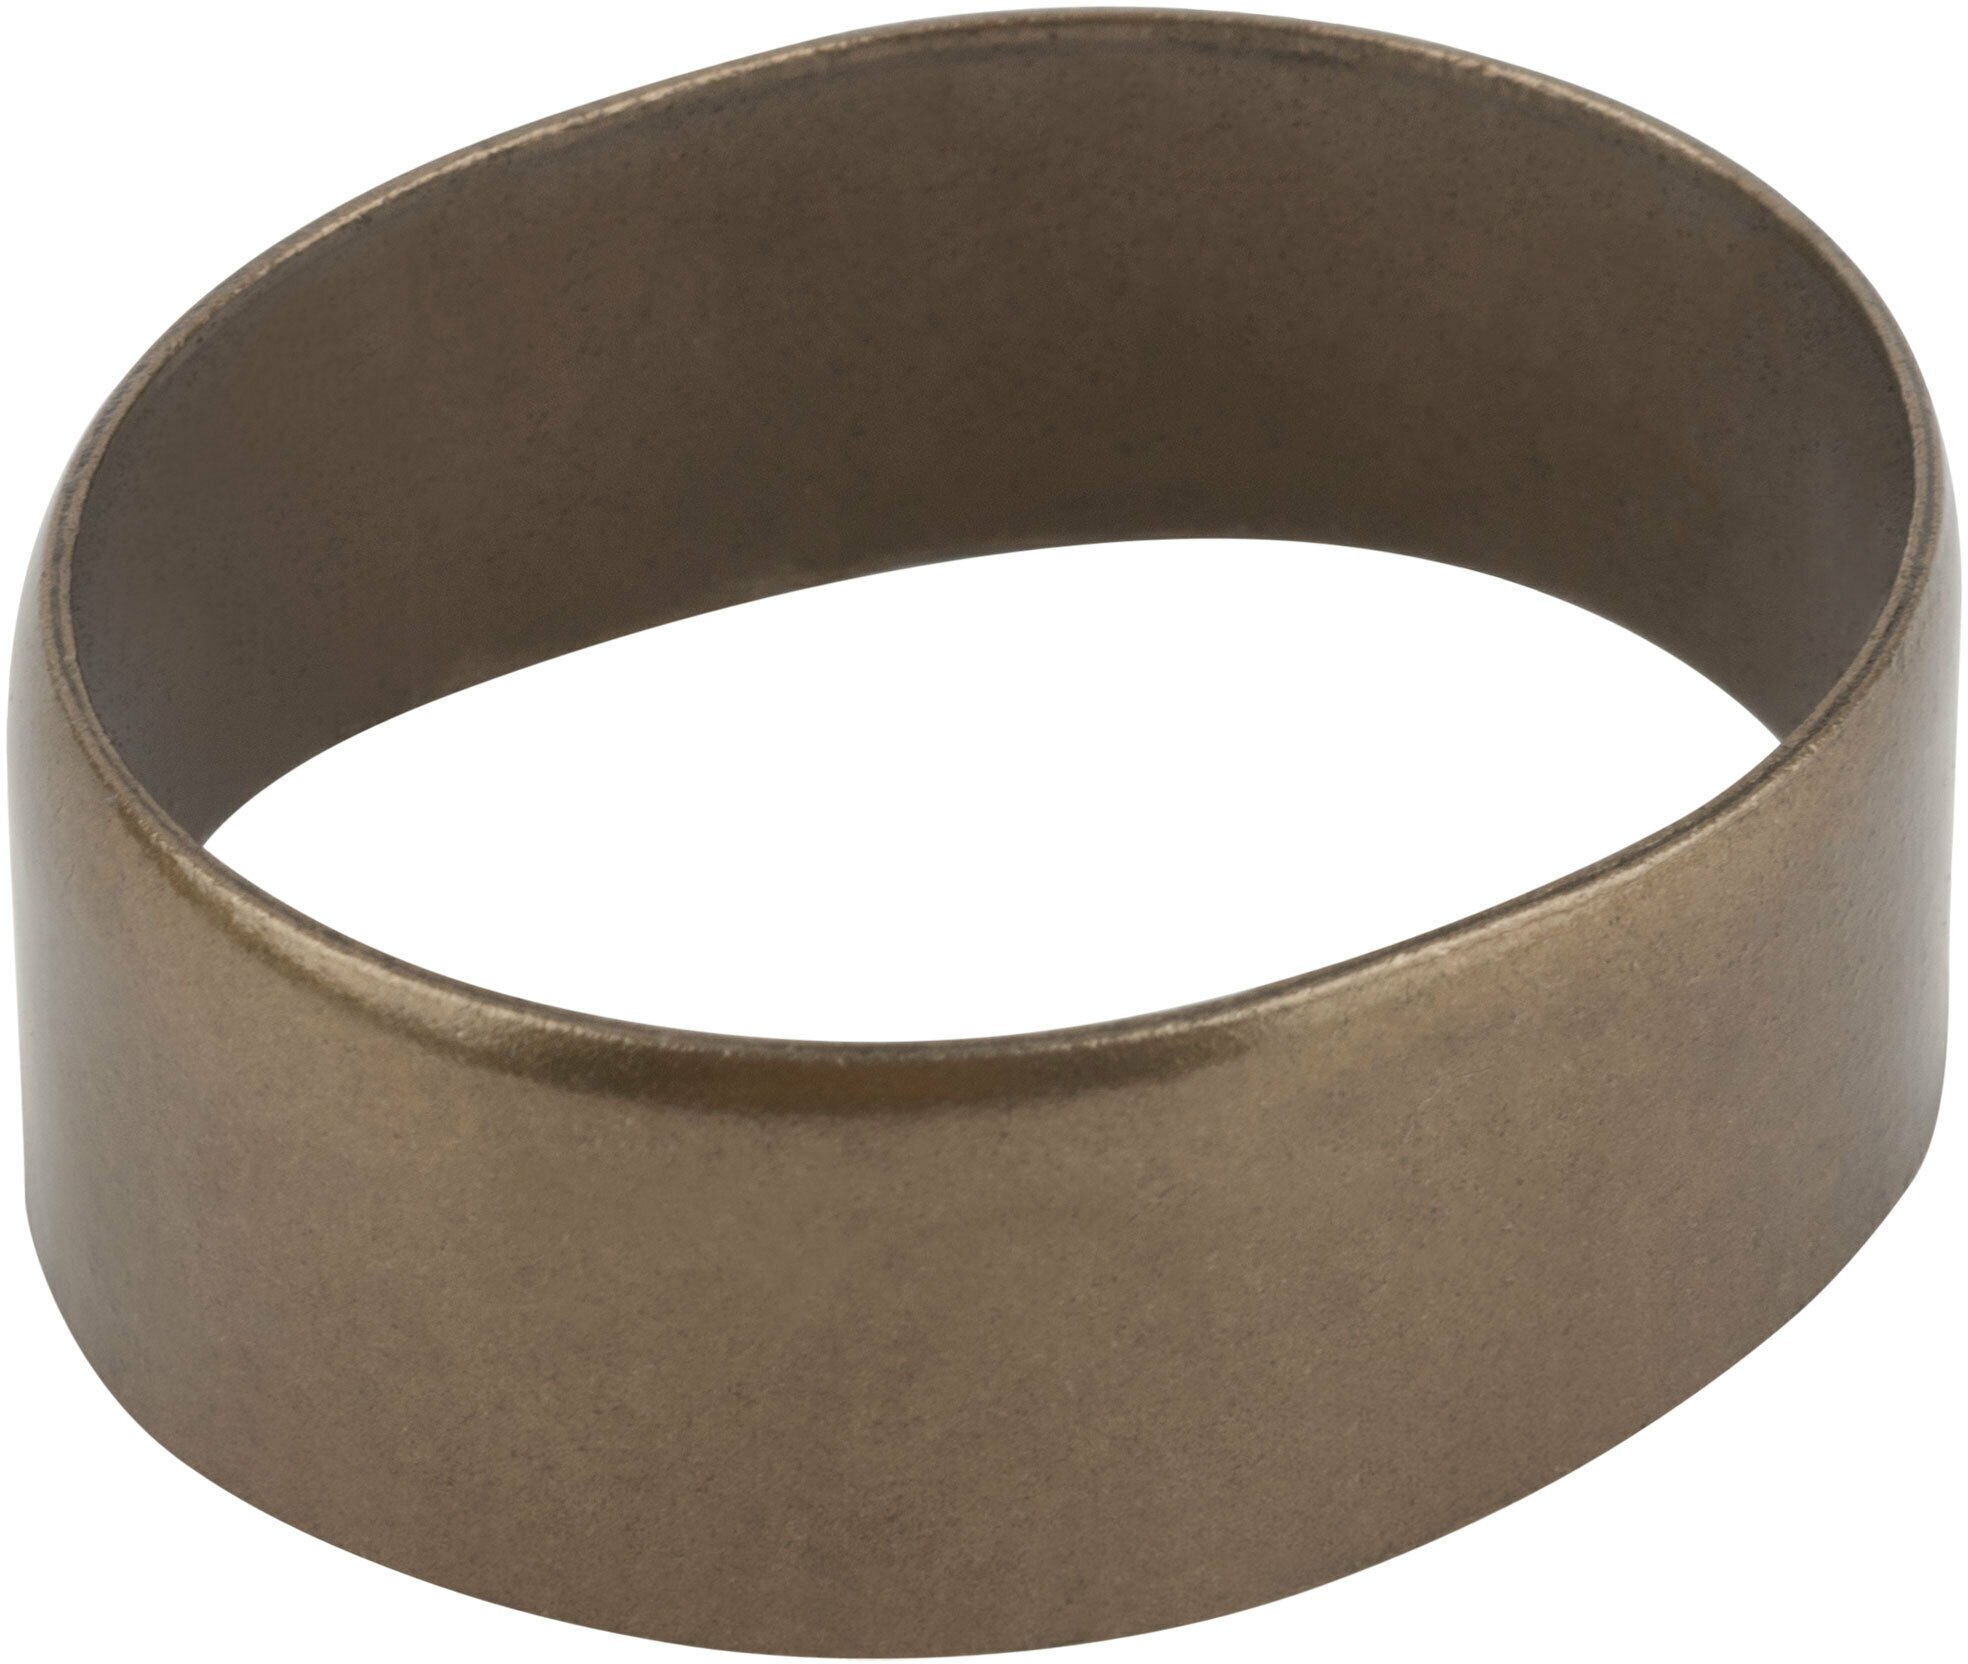 Приспособление для крепления косы ПК-4 (кольцо)- диаметр для черенка 39 мм материал: инструментальная сталь. Прочное и выдерживает большие нагрузки.